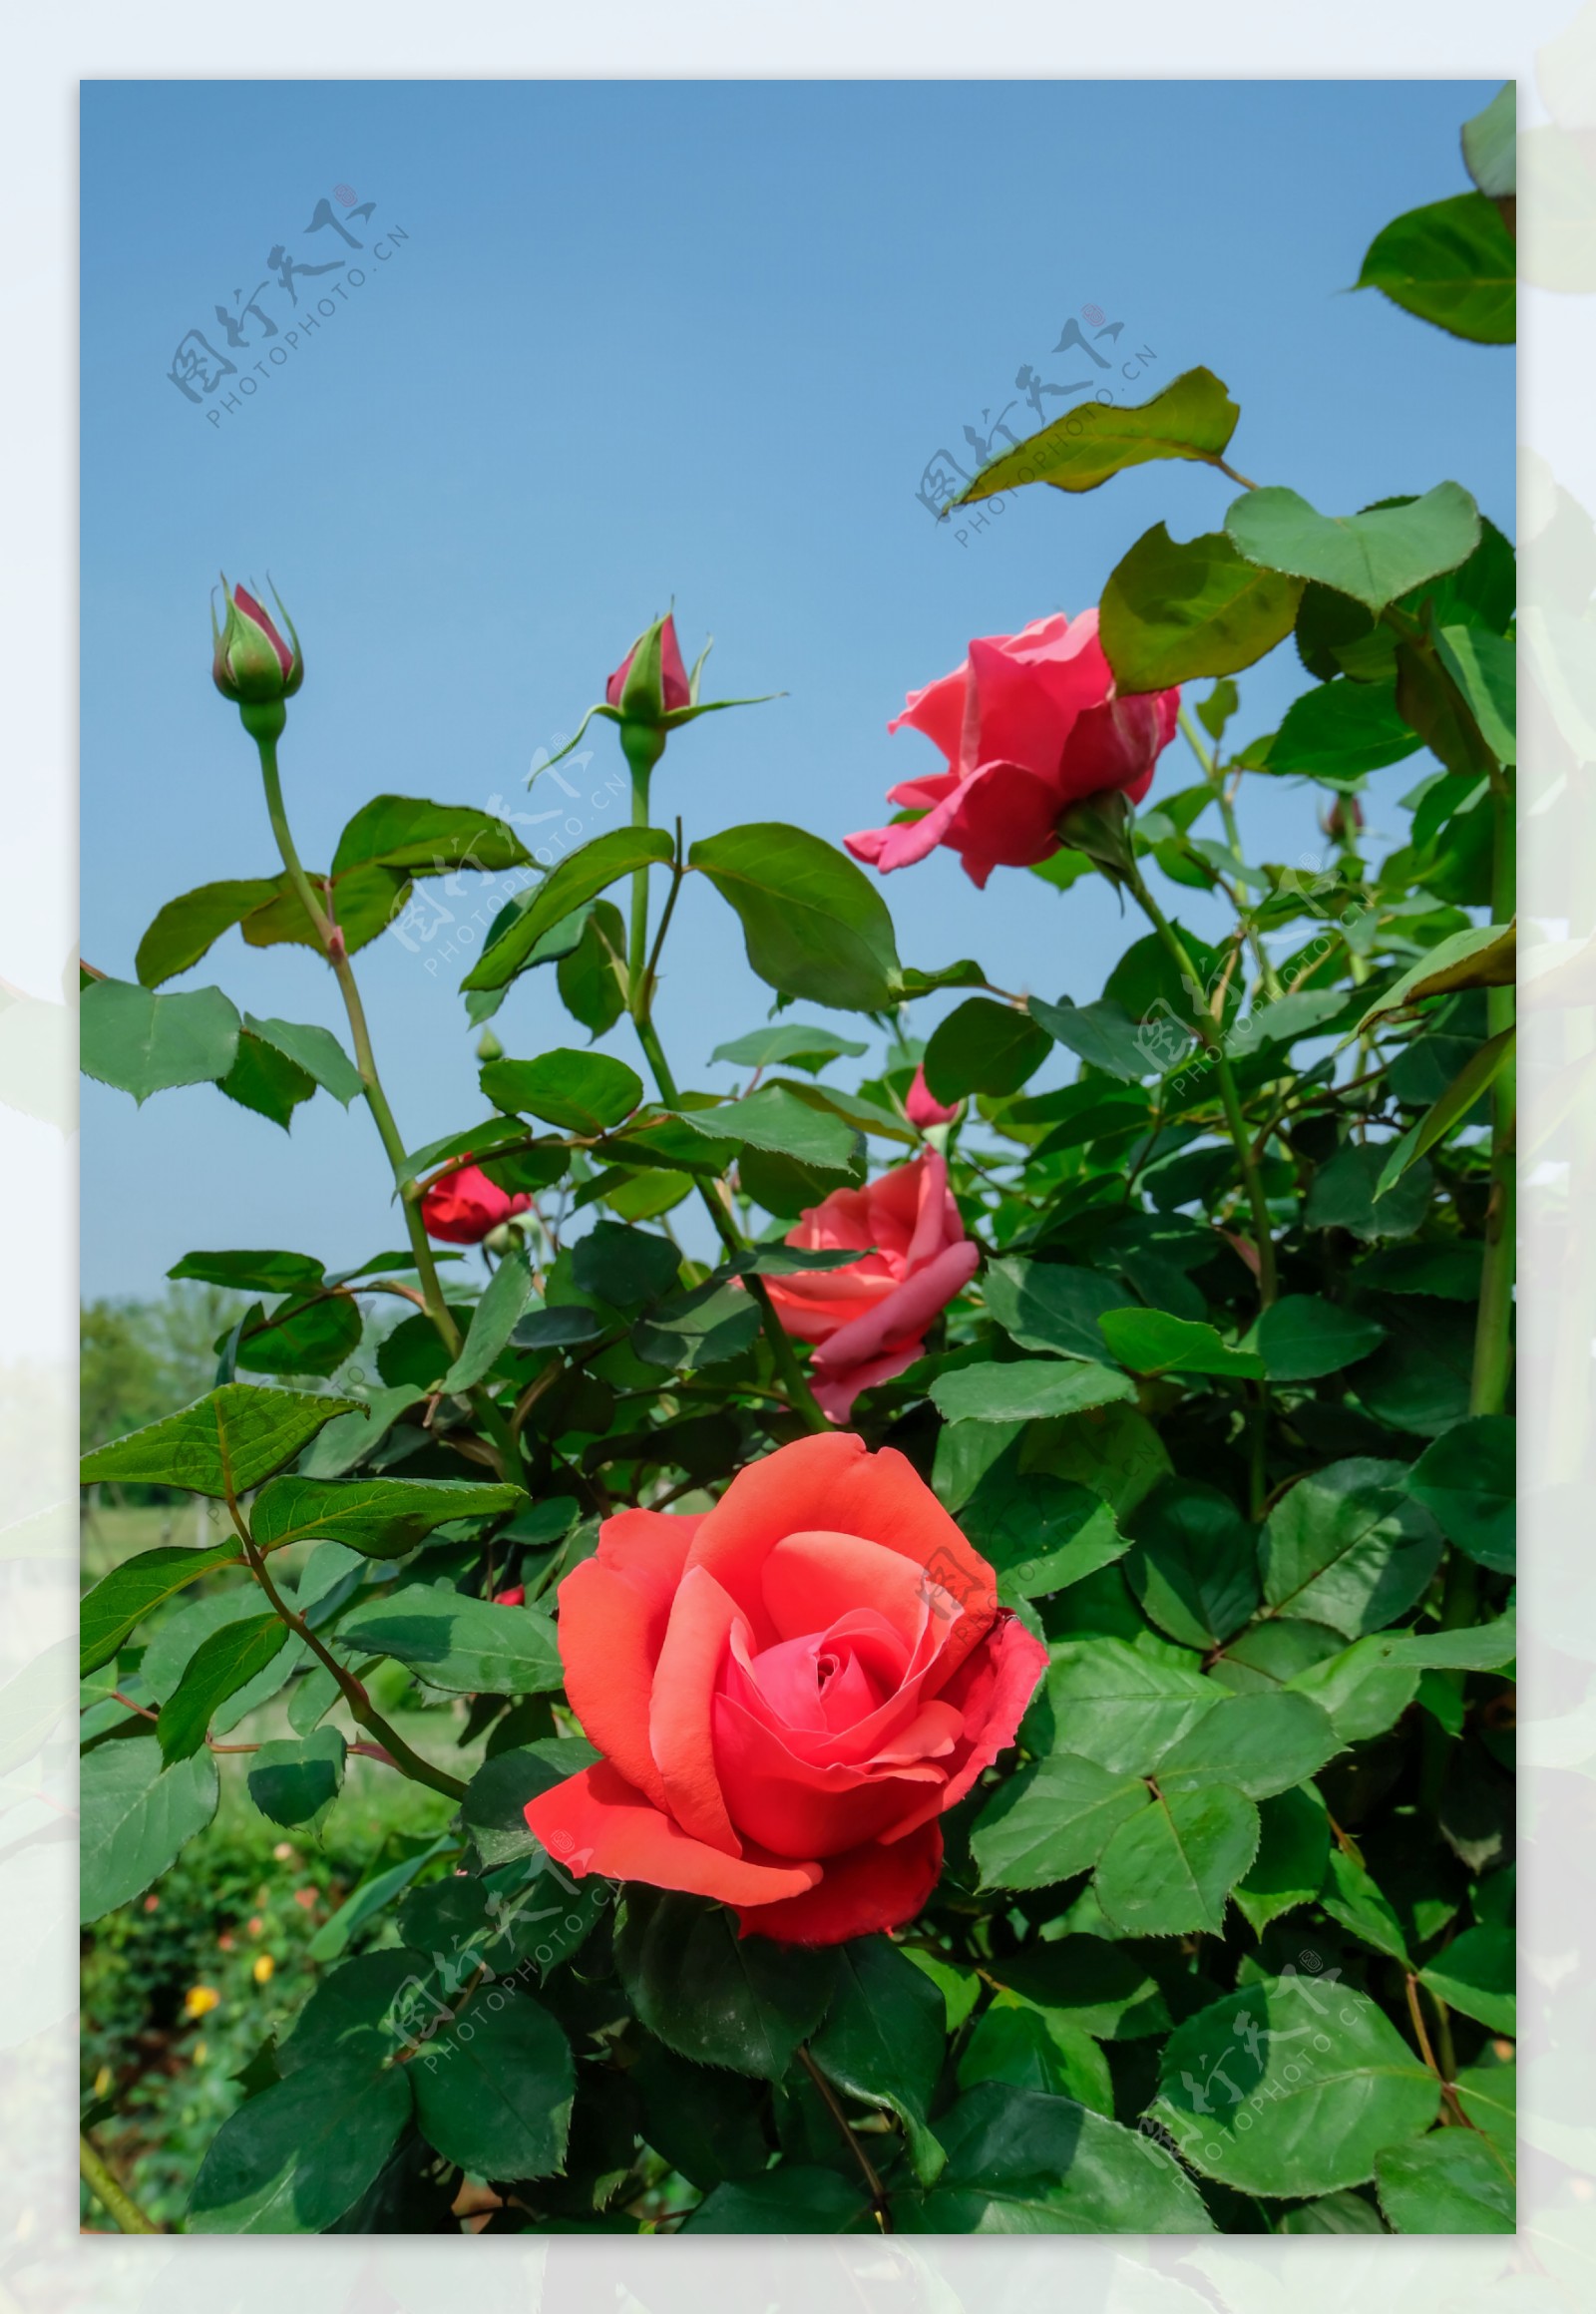 粉色淡雅精致的玫瑰花朵唯美图 英式粉玫瑰花园高清照片！-1-6TU